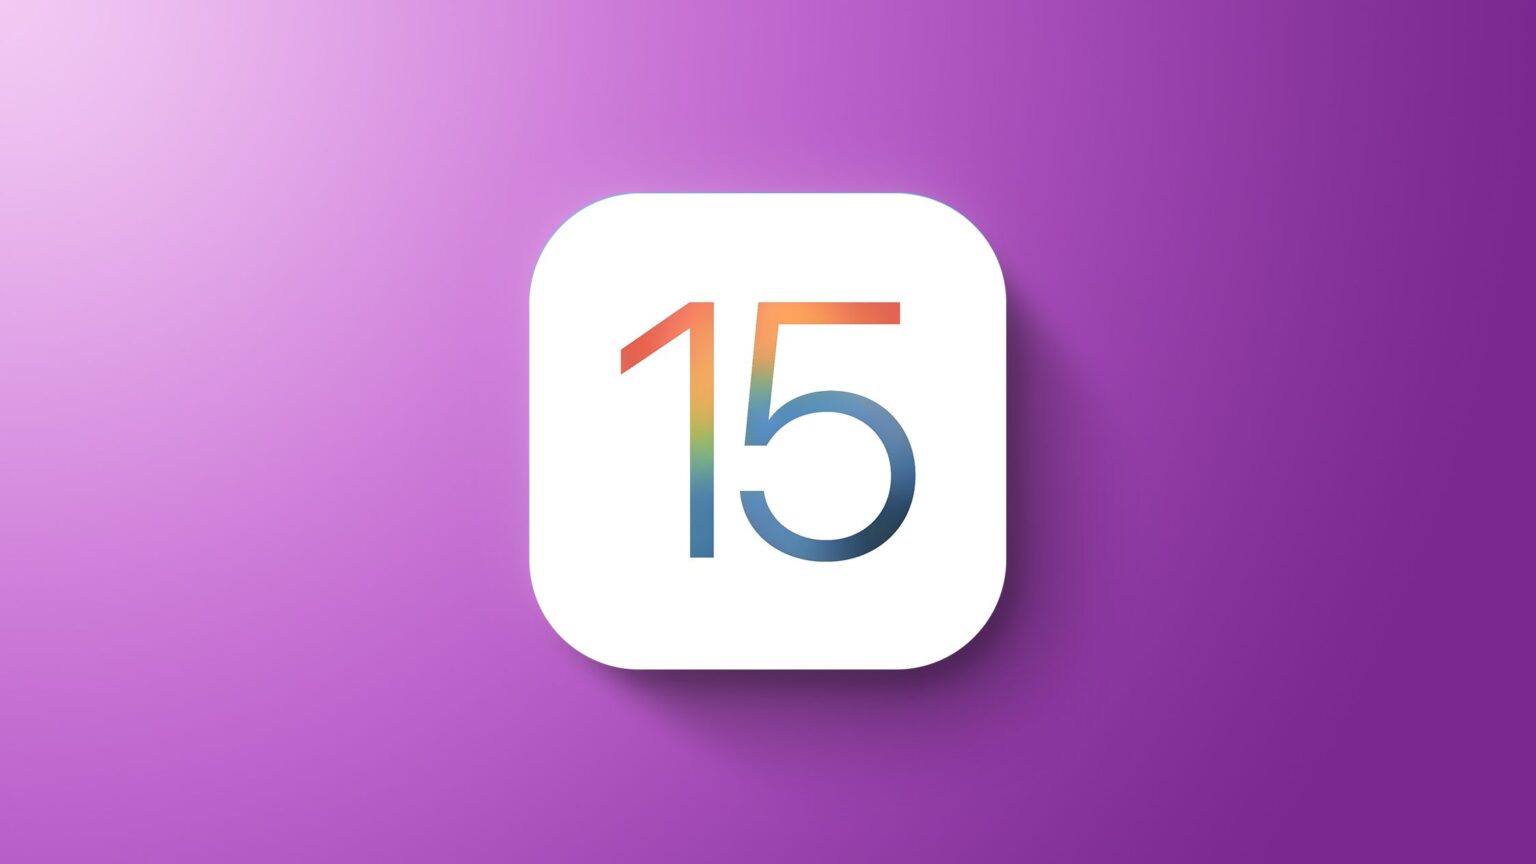 آبل ترسل تحديث iOS 15.2.1 لحل مشكلة تتسبب بتوقف هواتفها عند ربطها مع الأجهزة المنزلية